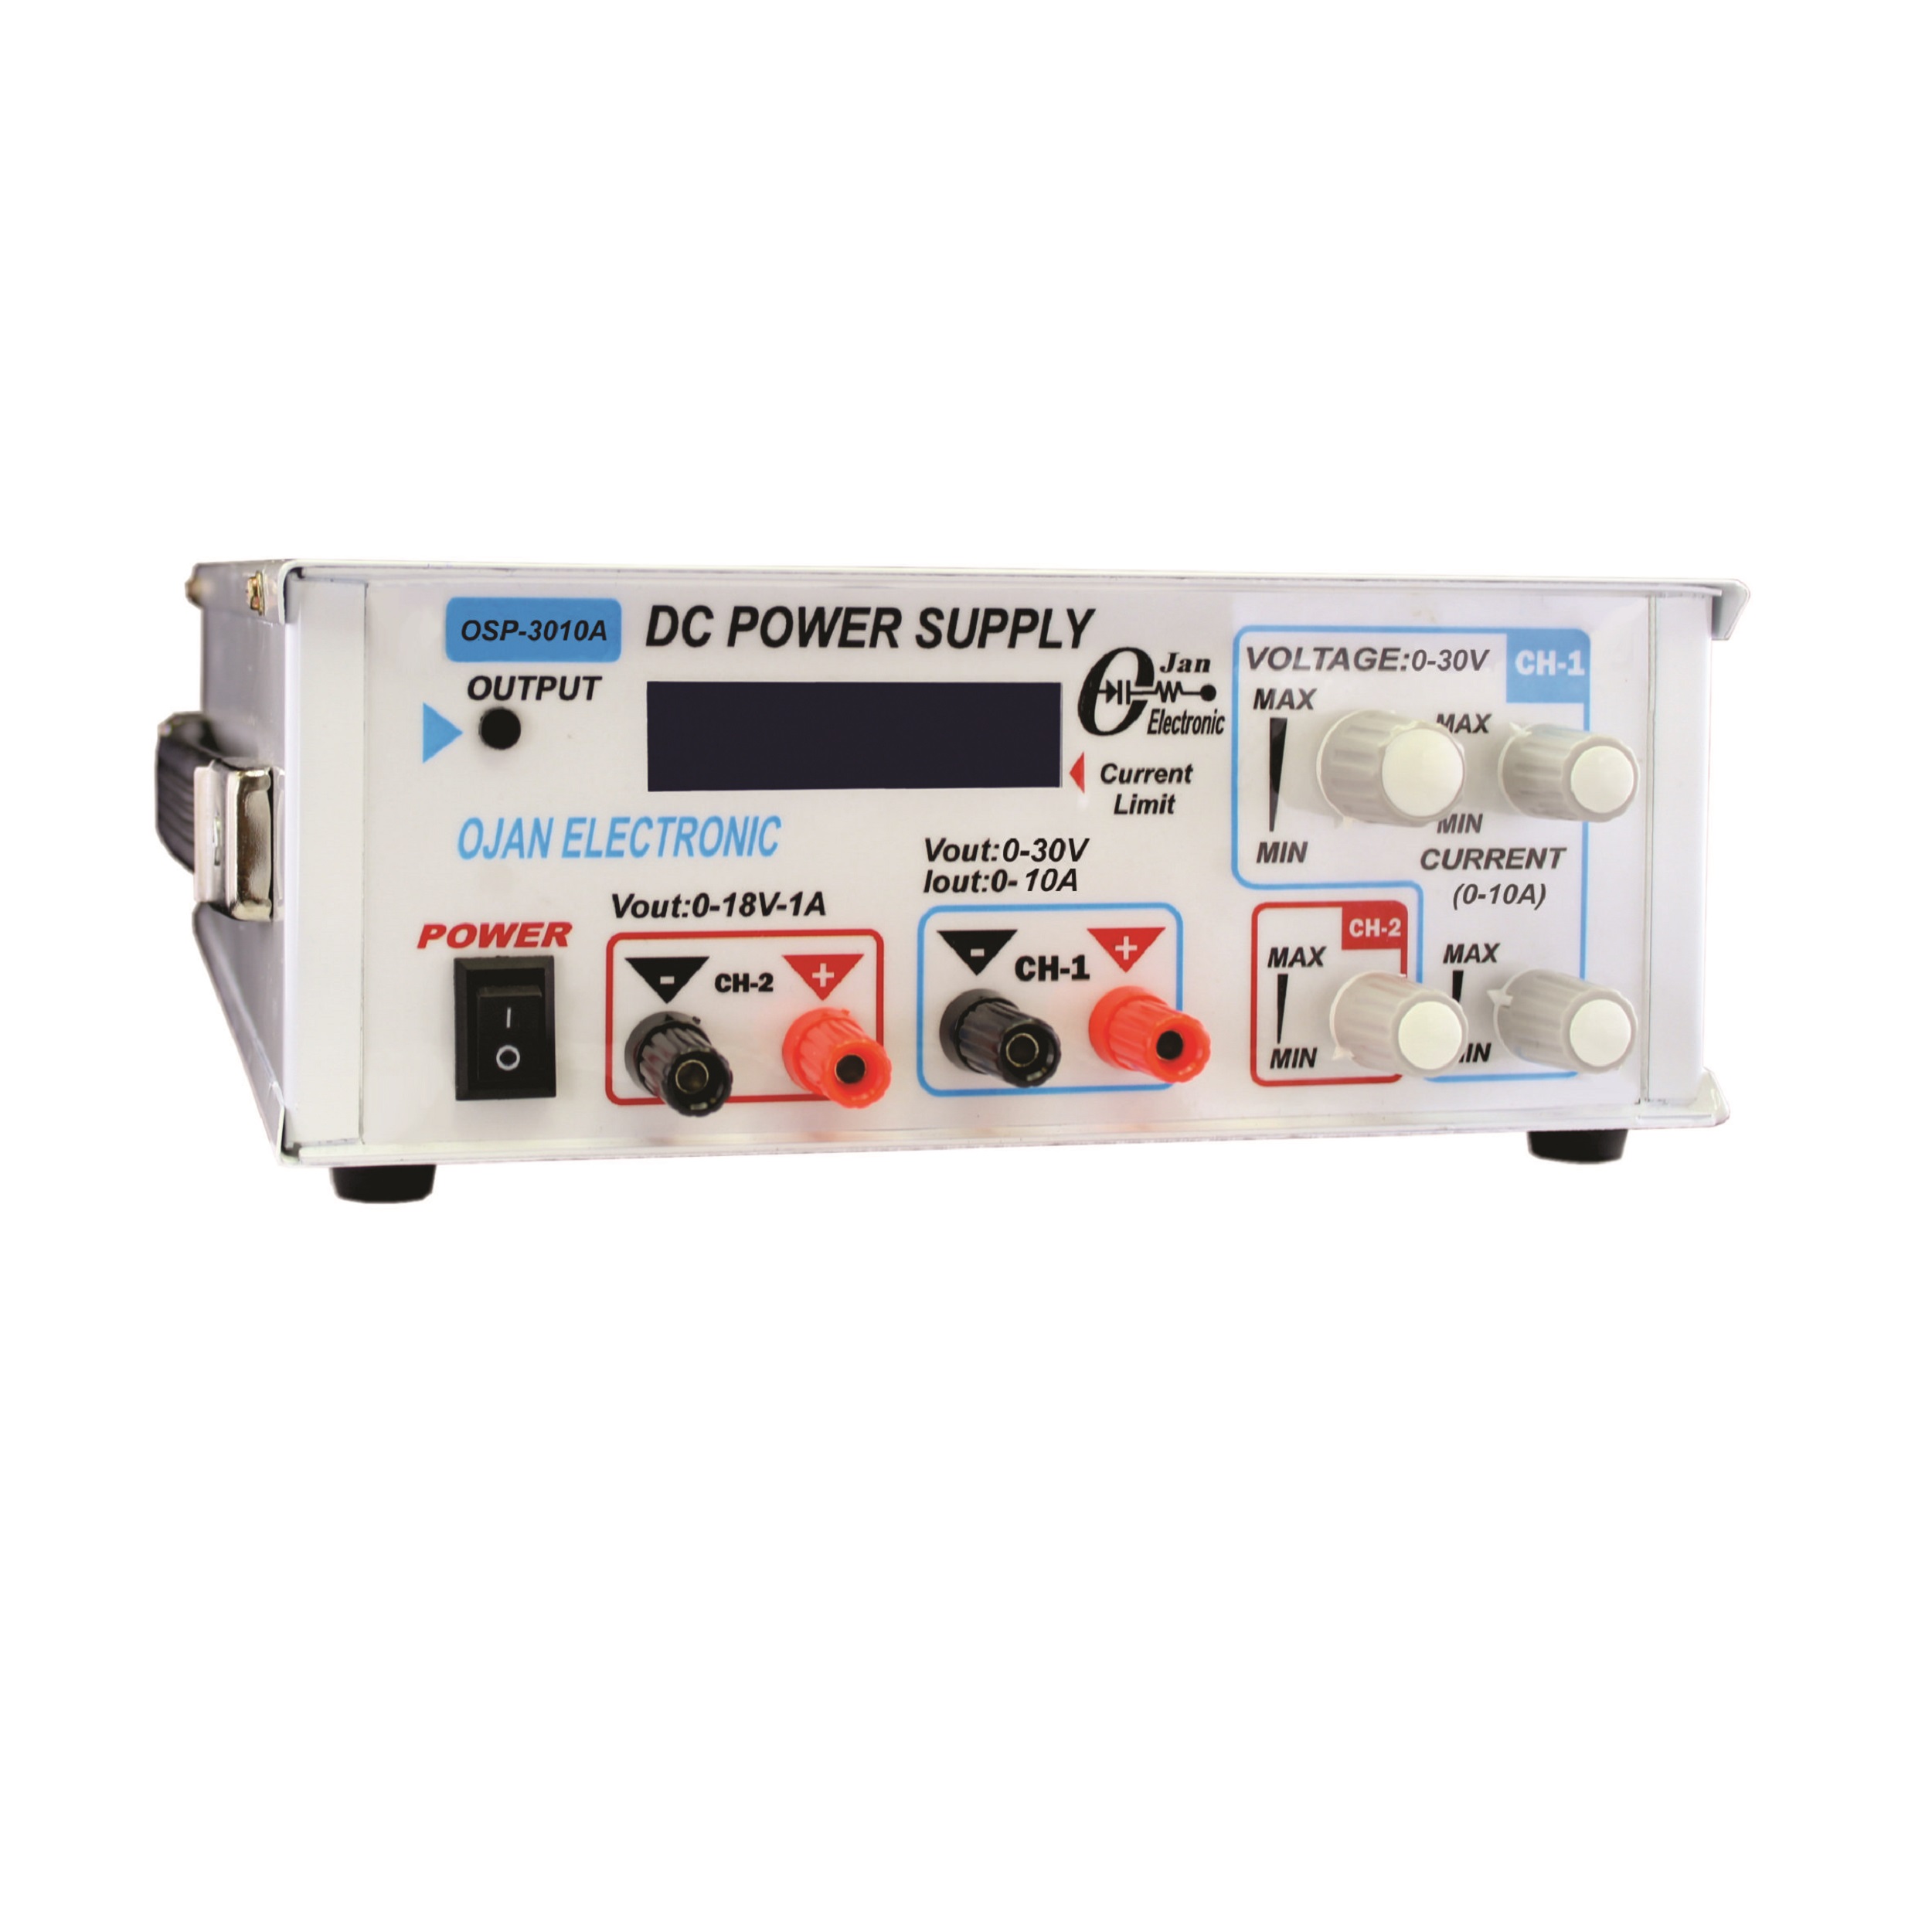 منبع تغذیه الکتریکی 30 ولت 10 آمپر اوژن الکترونیک مدل OSP-3010A